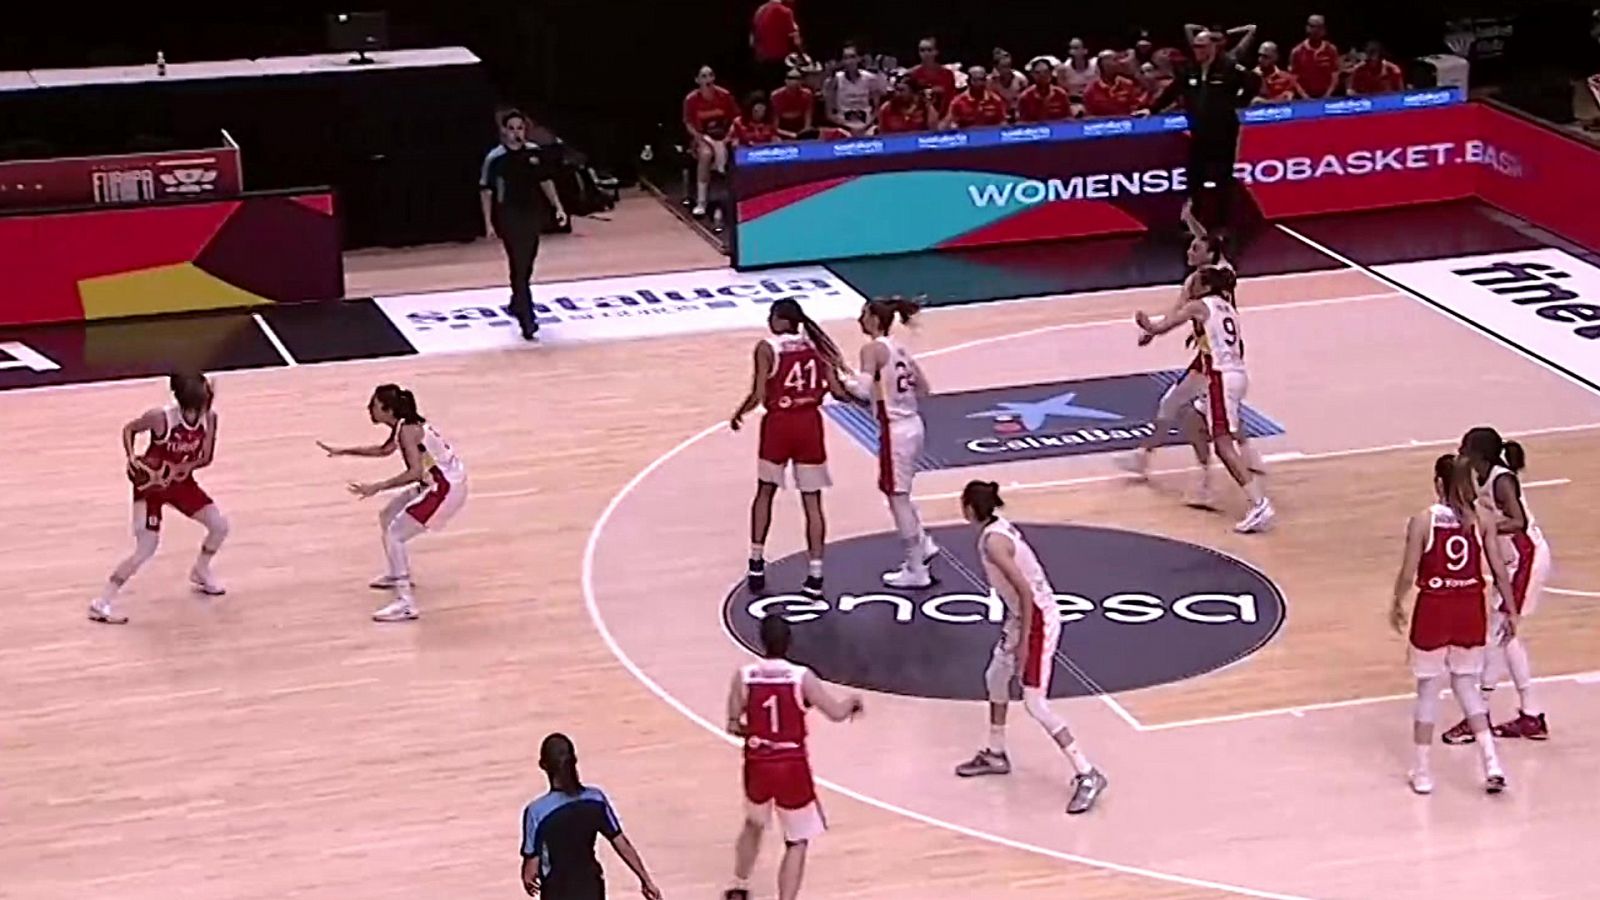 Baloncesto - Gira preparación Eurobasket femenino 2021: España - Turquía